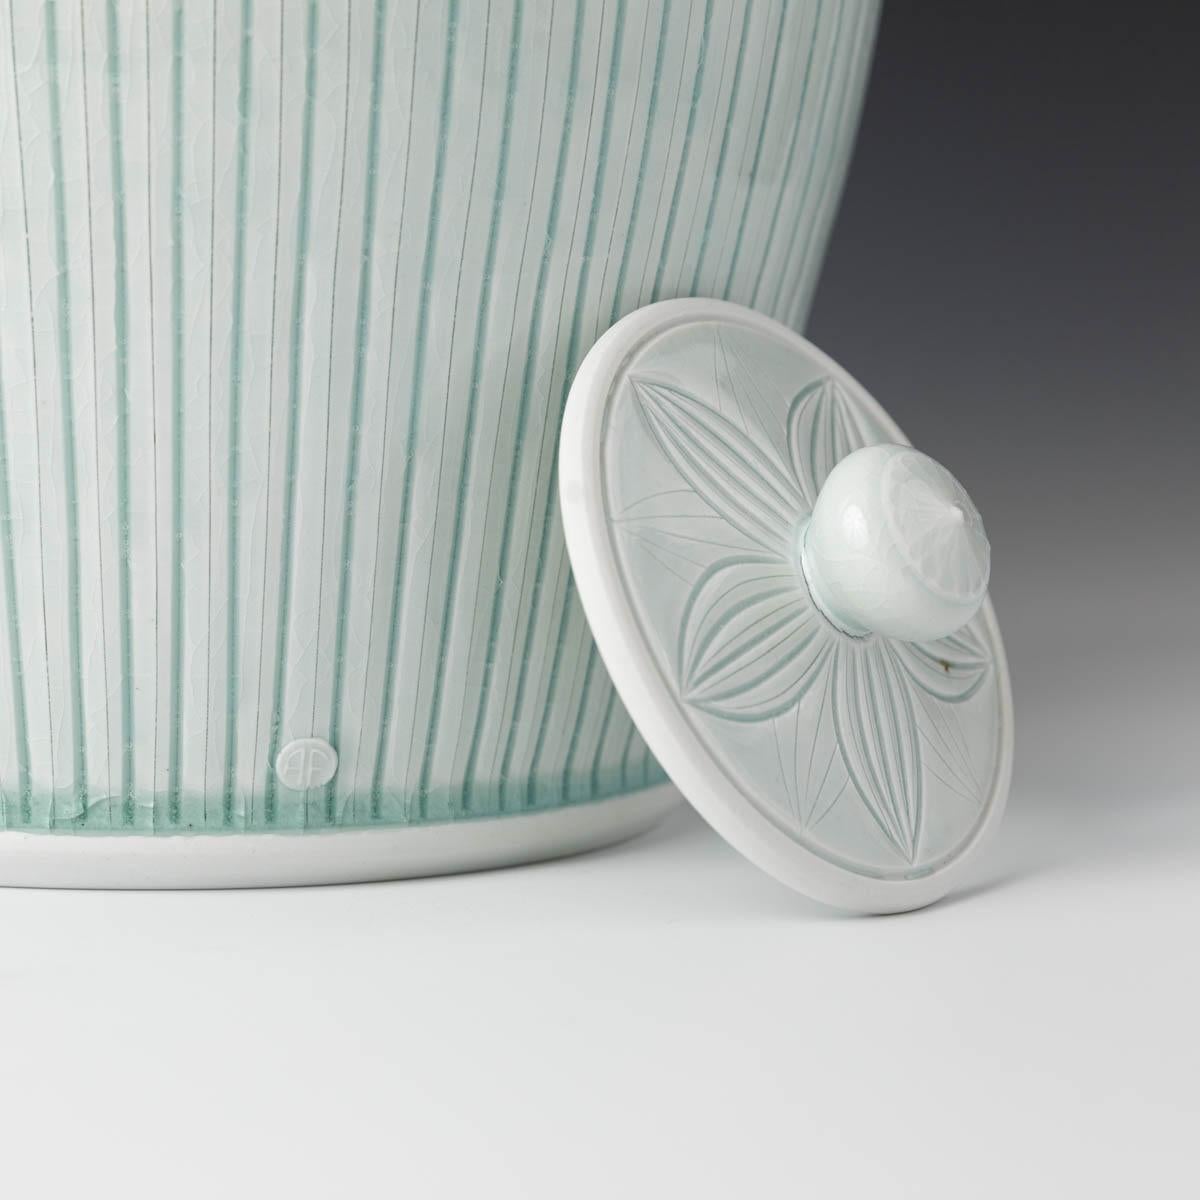 Large Covered Porcelain Jar with Lid- celedon glazed, hand carved, porcelain - Sculpture by Adam Field